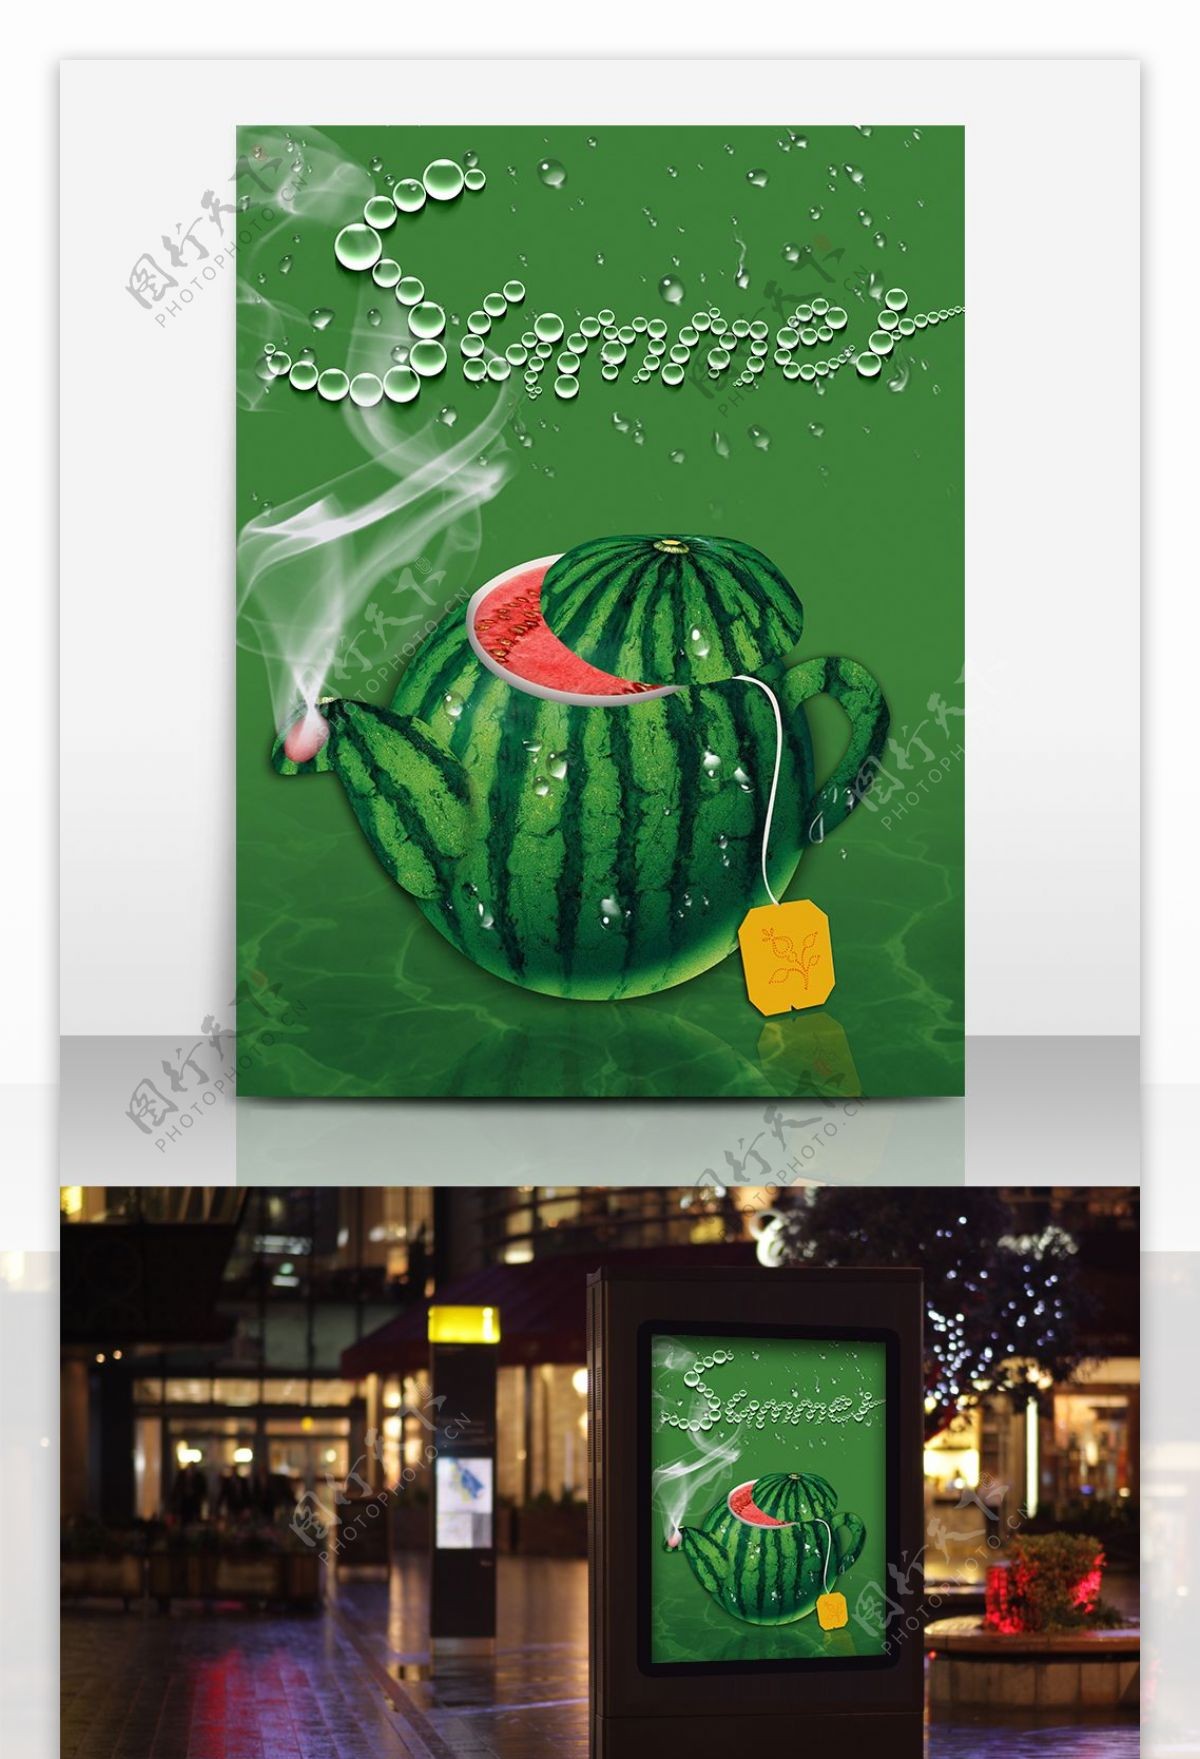 水壶创意大西瓜海报素材原创创意水果海报设计